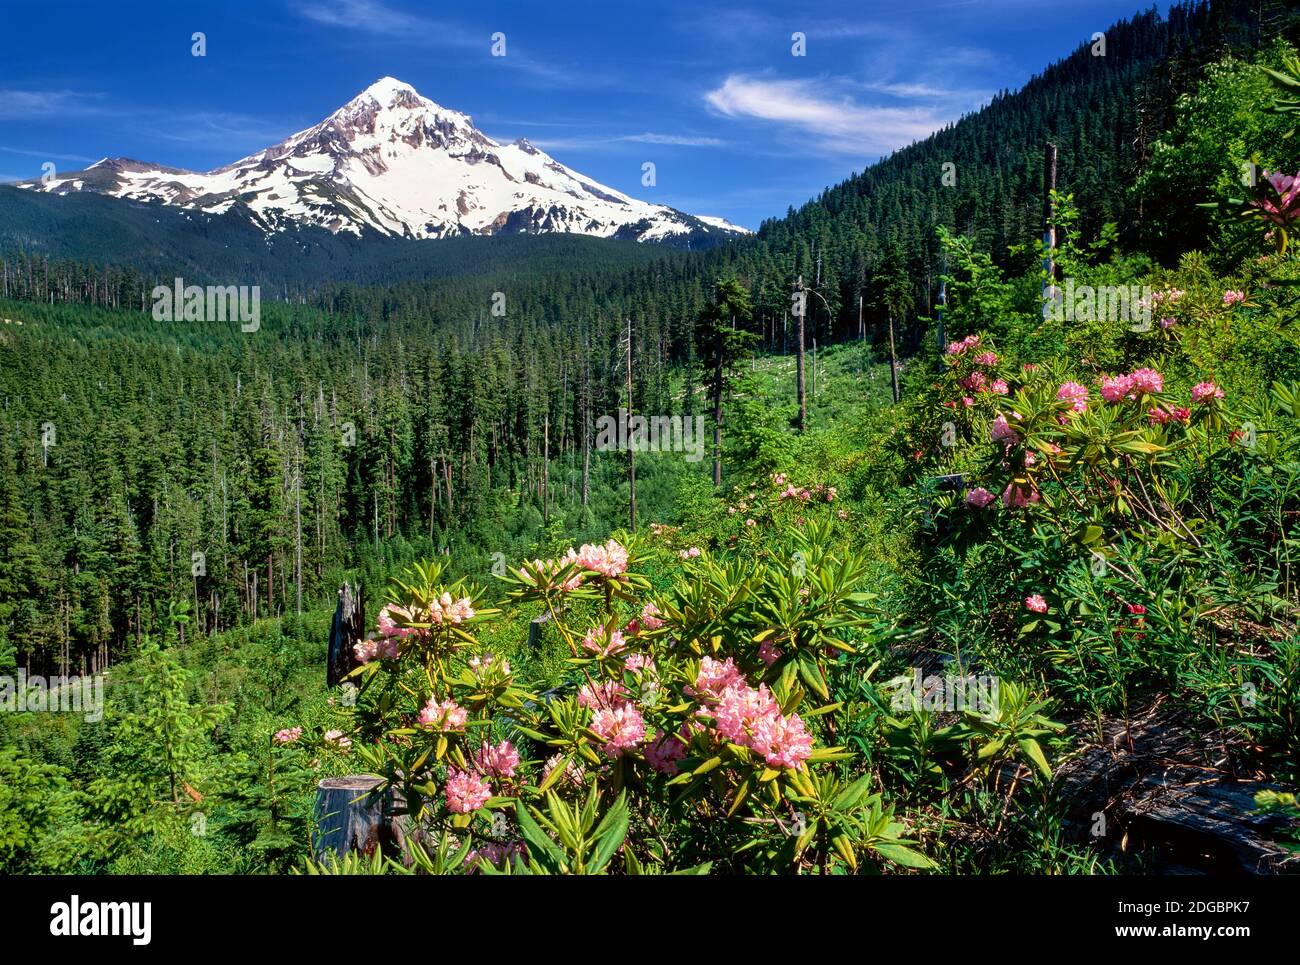 Fiori di Rhodendron che fioriscono su piante con la catena montuosa sullo sfondo, Mt Hood, Lolo Pass, Mt Hood National Forest, Oregon, USA Foto Stock